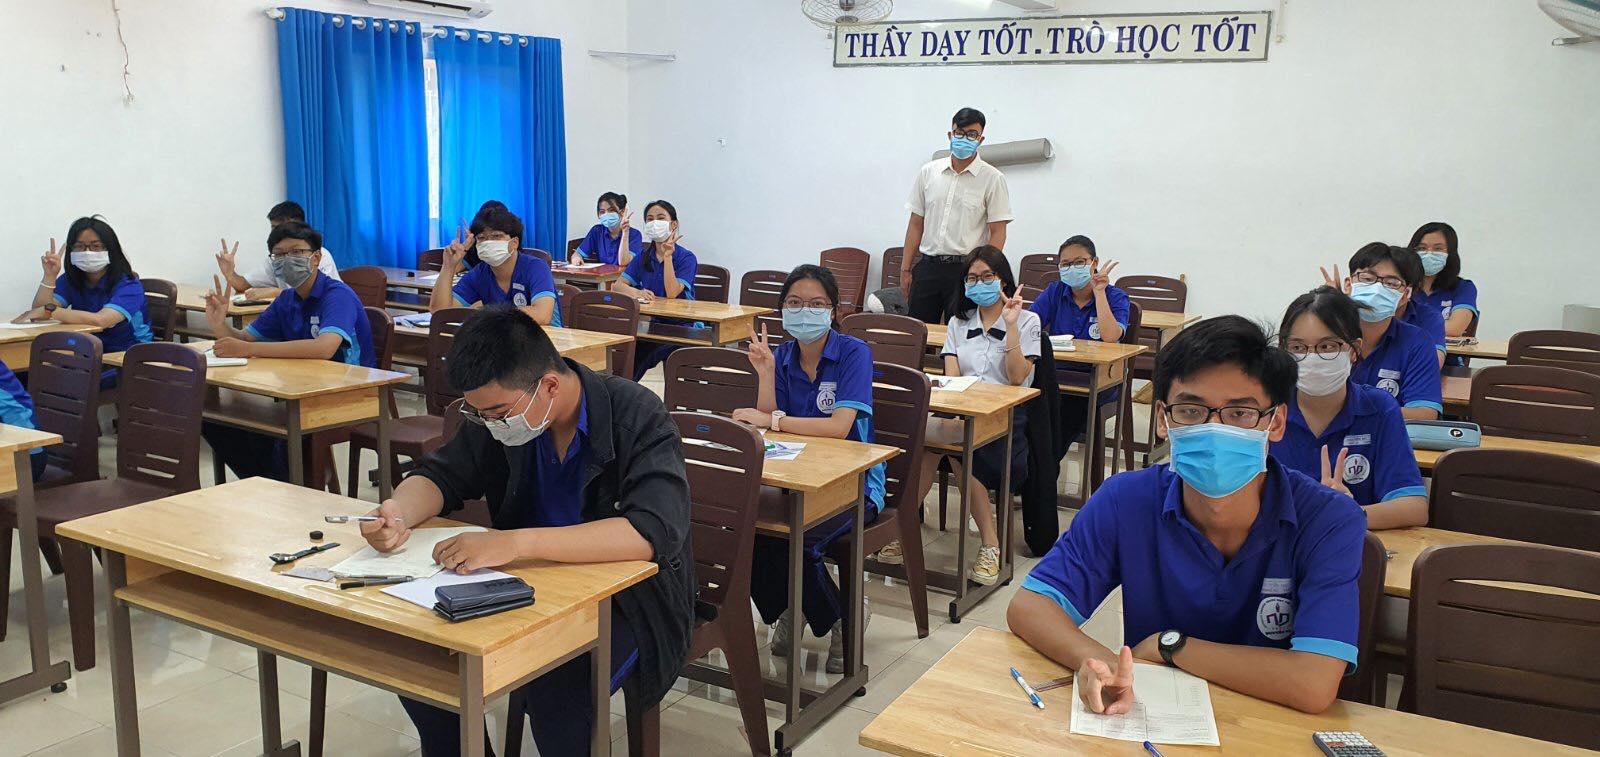 Trường THPT Nguyễn Du (quận 10) có rất nhiều hoạt động cho học sinh